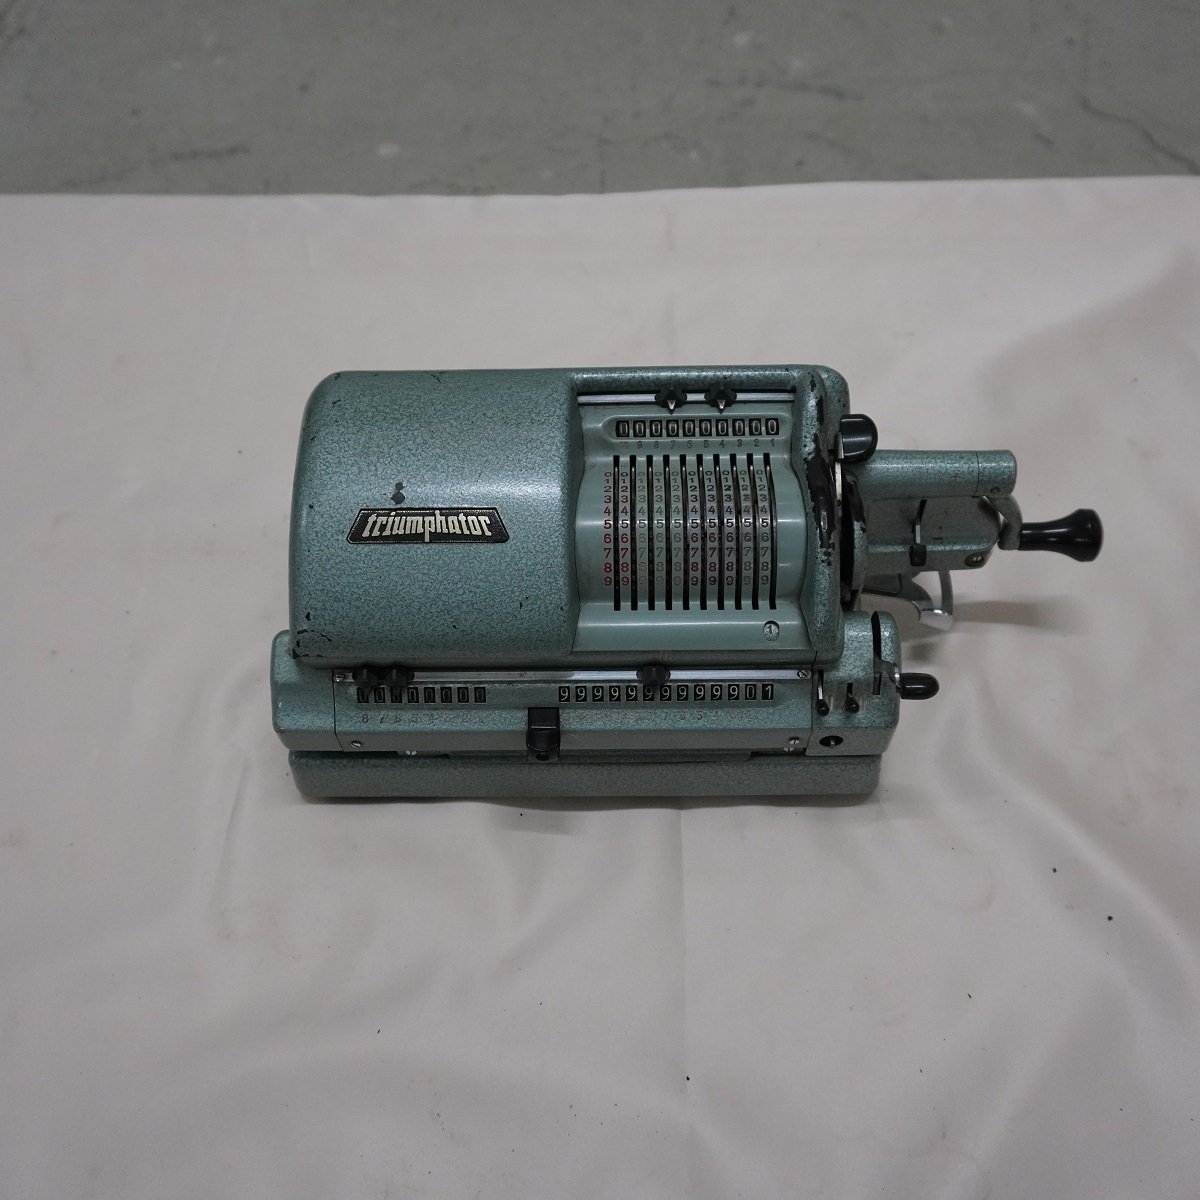 Rechenmaschine Triumphator CRN2, SN: 365474 (ZCOM Zuse-Computer-Museum CC0)